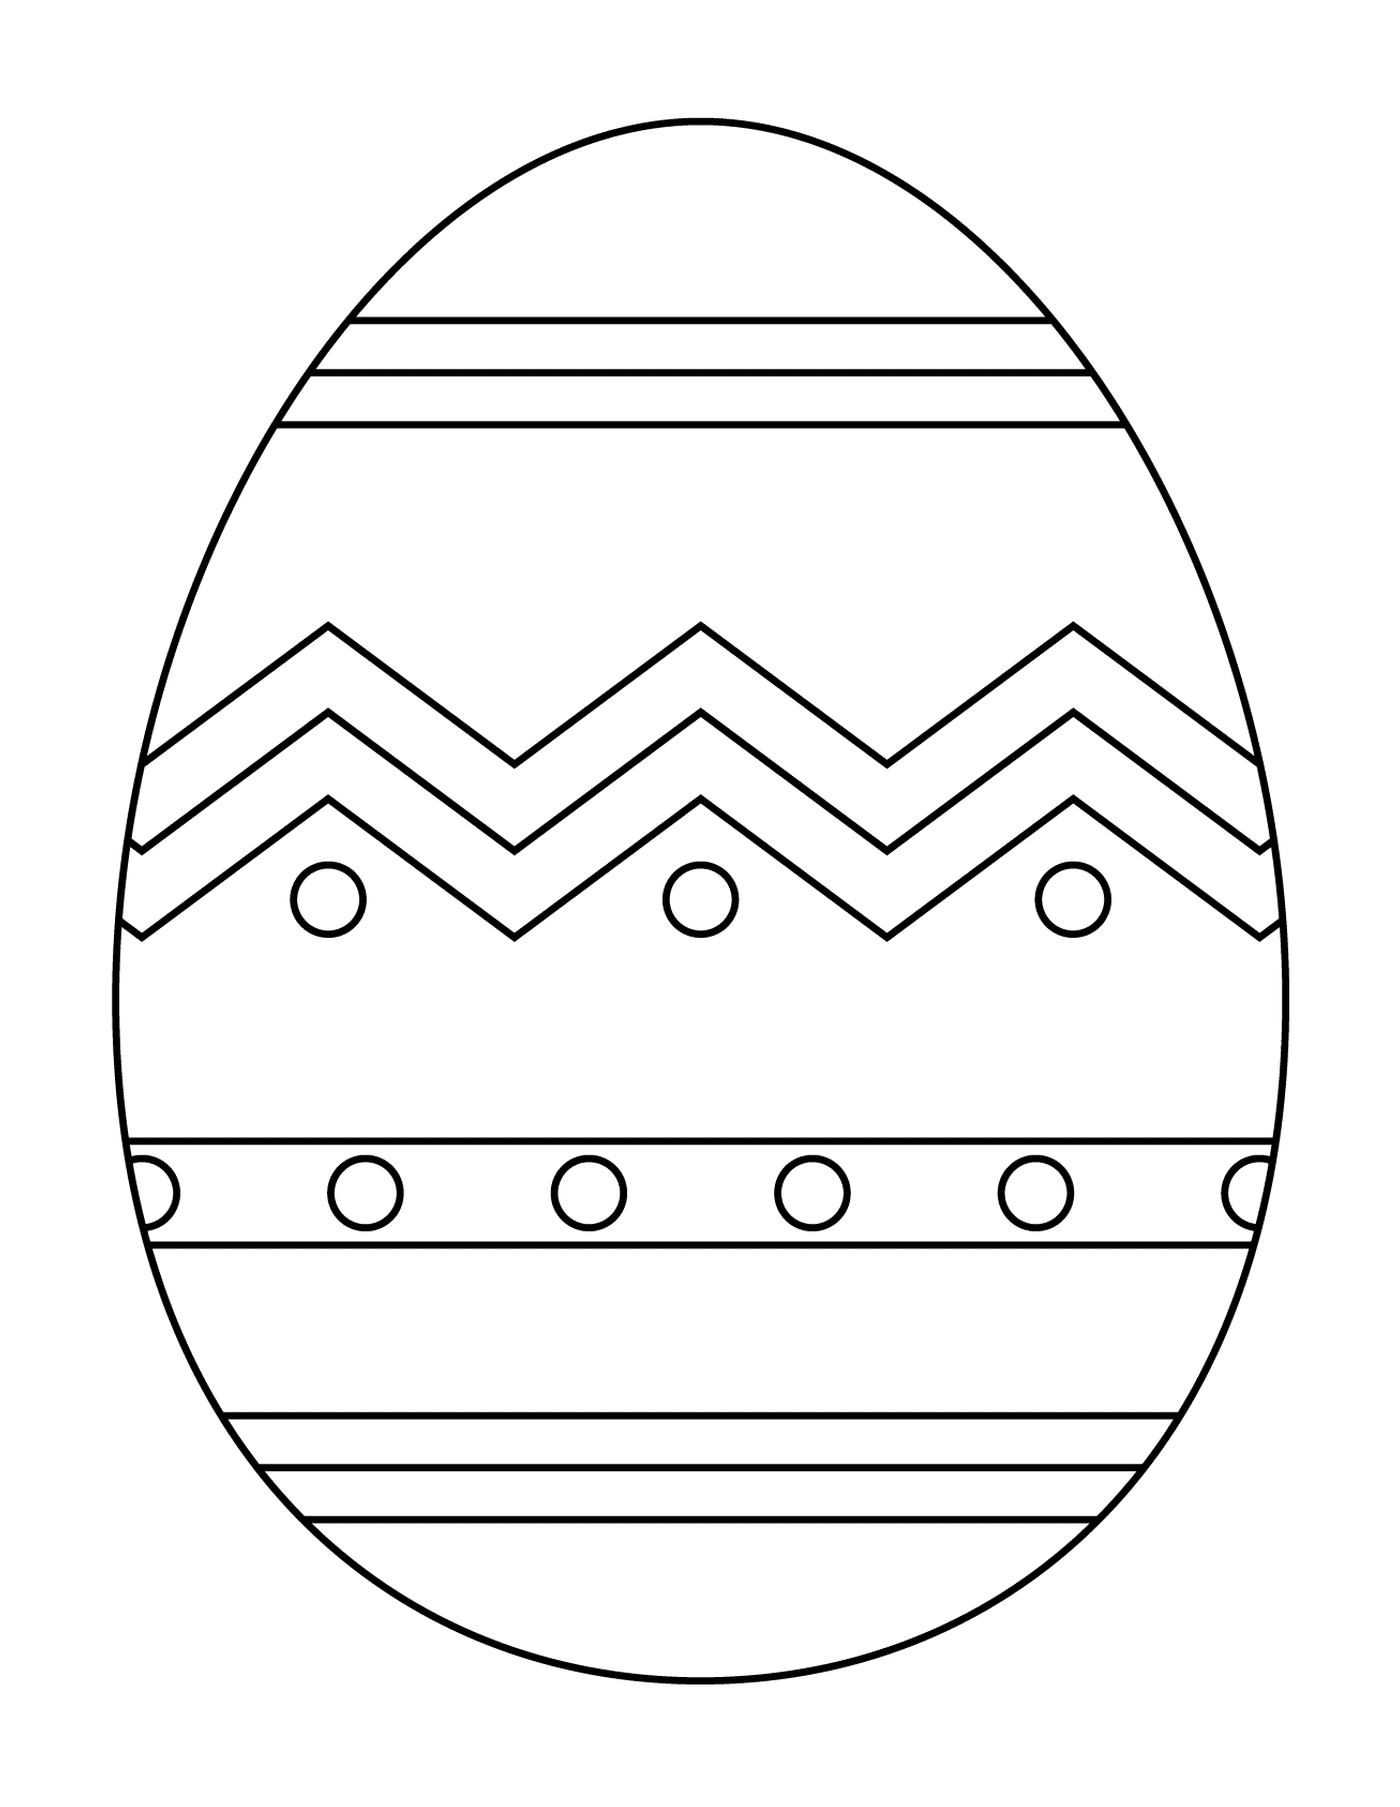  Пасхальное яйцо с абстрактным рисунком 1 